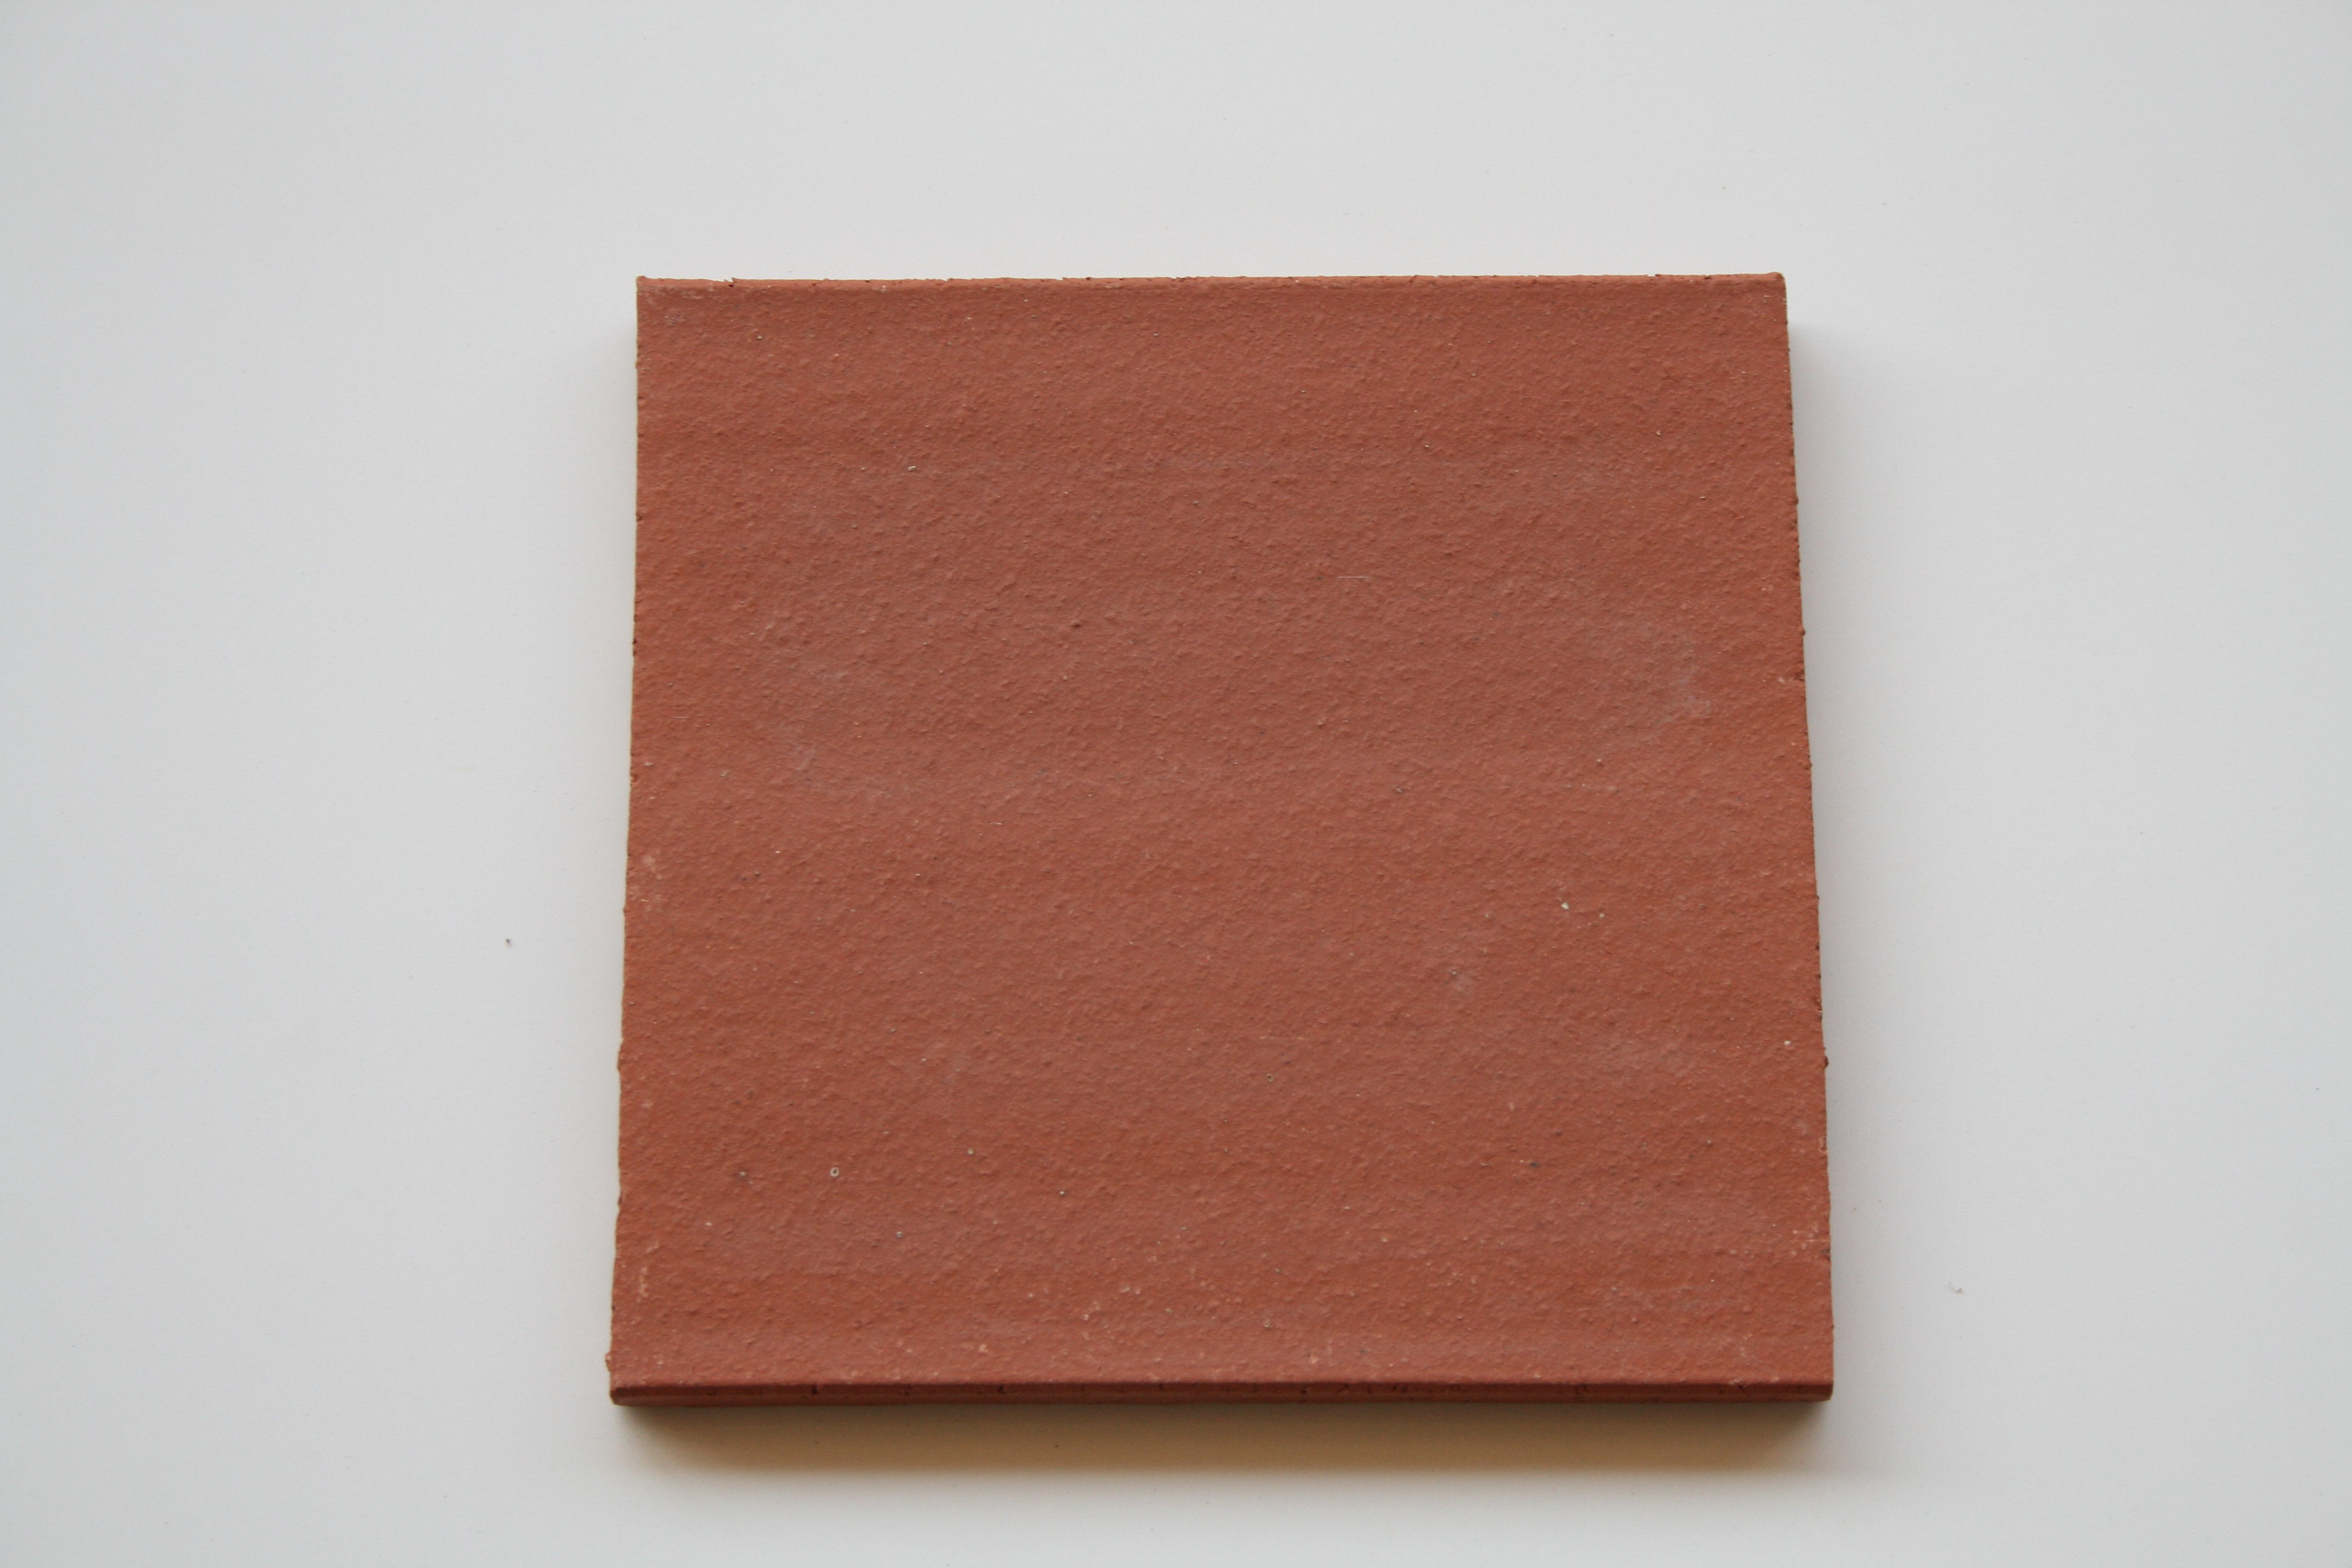 Carreaux terre cuite lisse rouge 19.2x19.2x1.3 cm